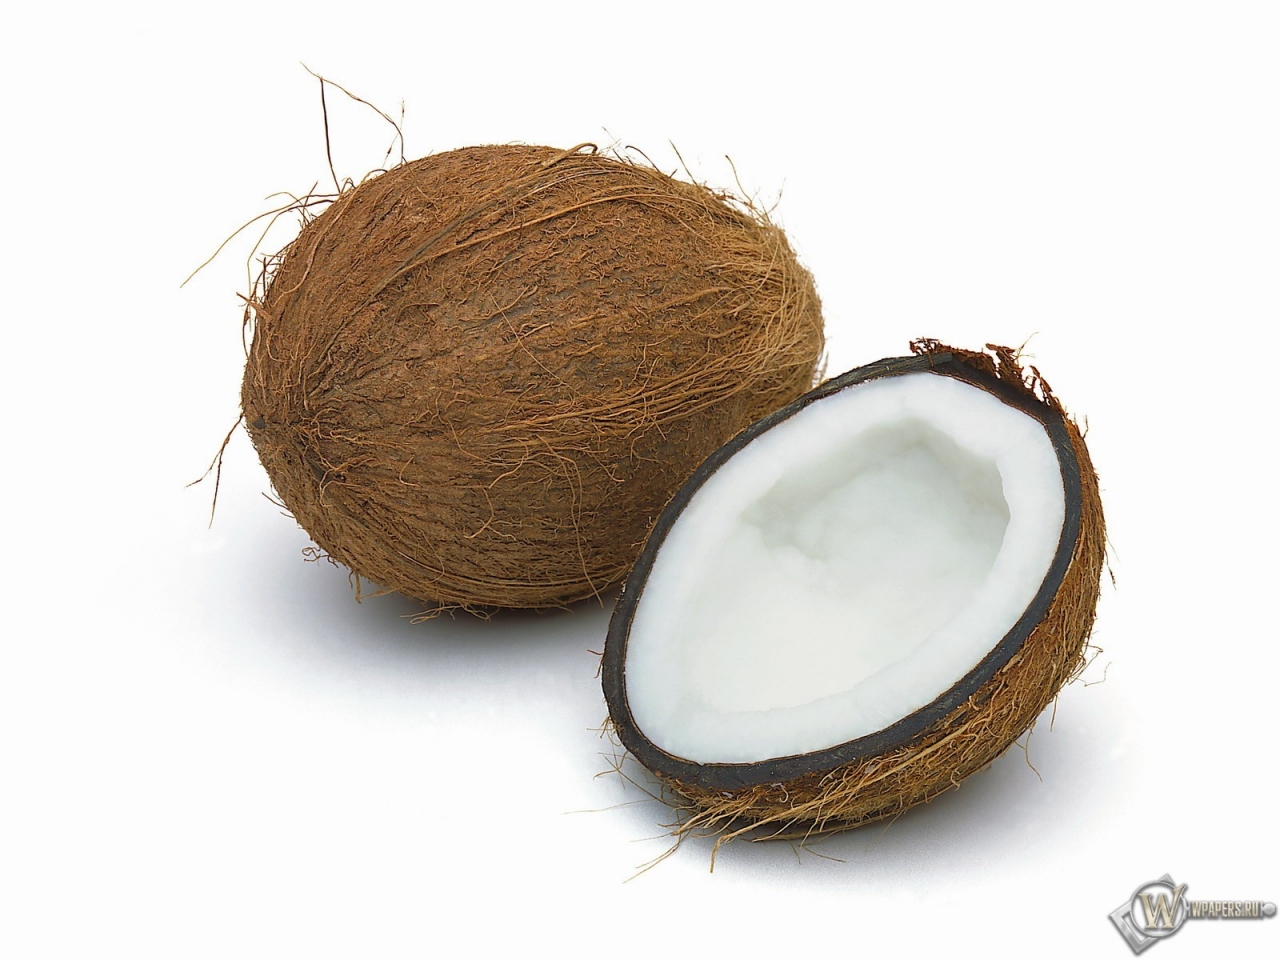 Картинка кокос без фона